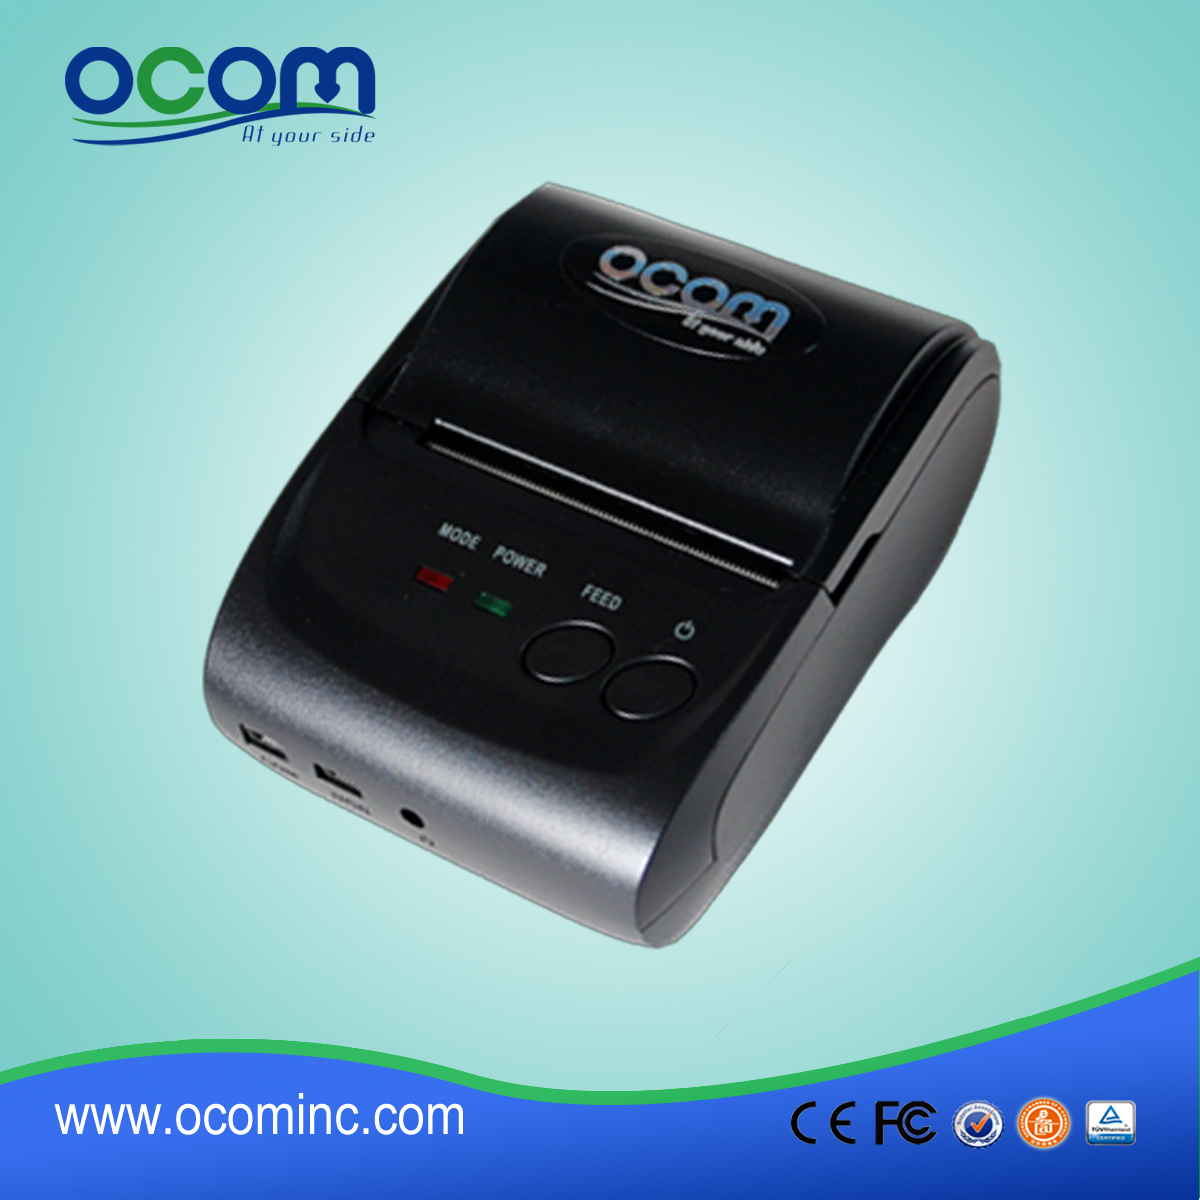 OCPP-M05: 2015 de haute qualité mini-imprimante ticket thermique, imprimante thermique Android